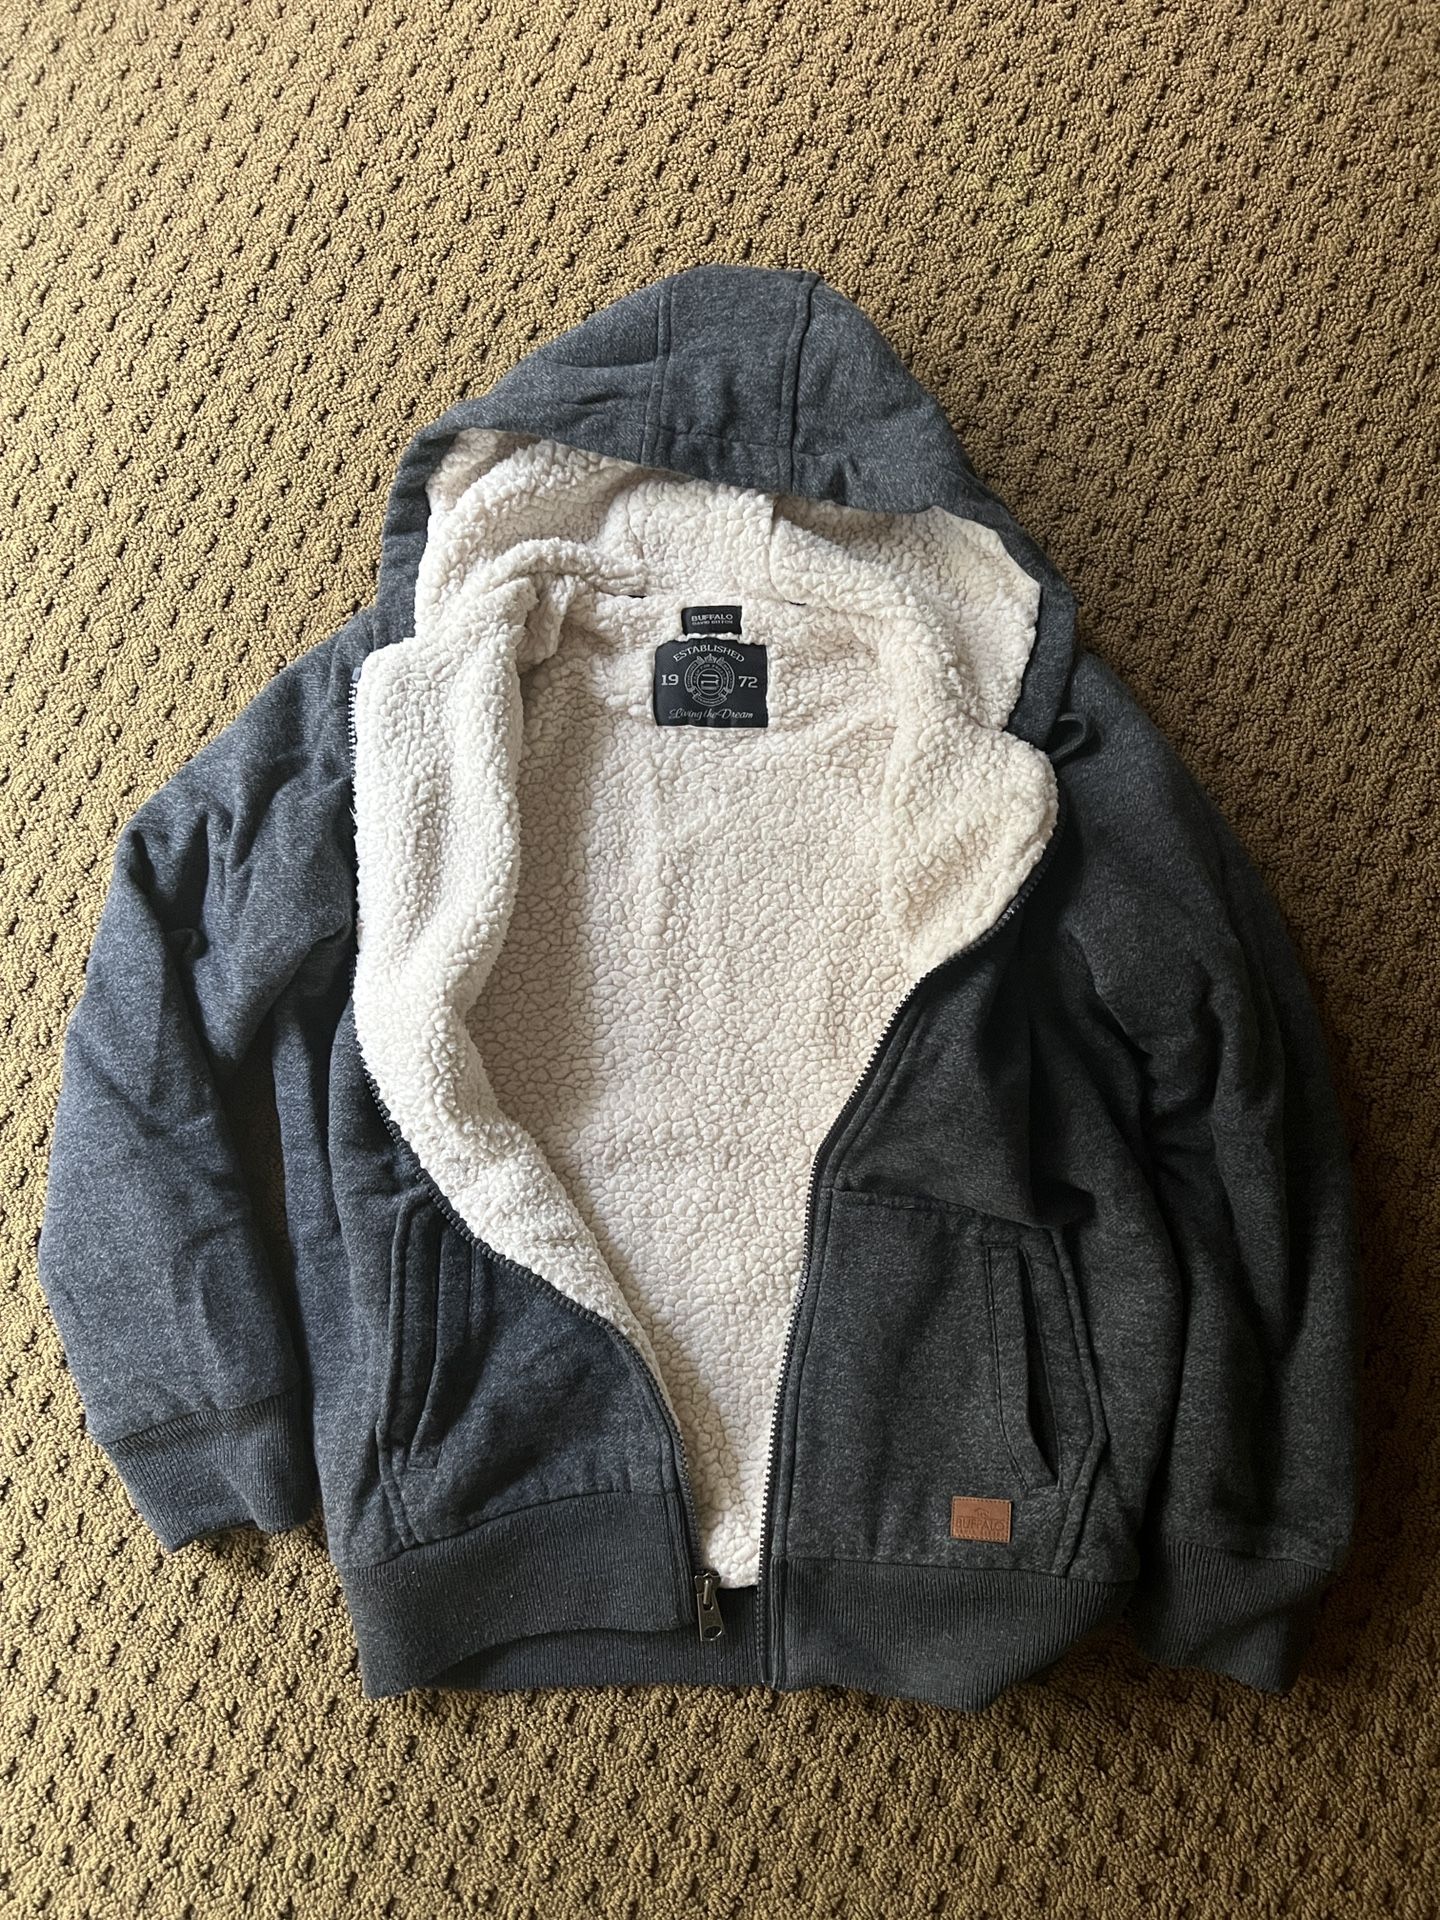 Men’s Sherpa Lined Fleece Jacket Size M